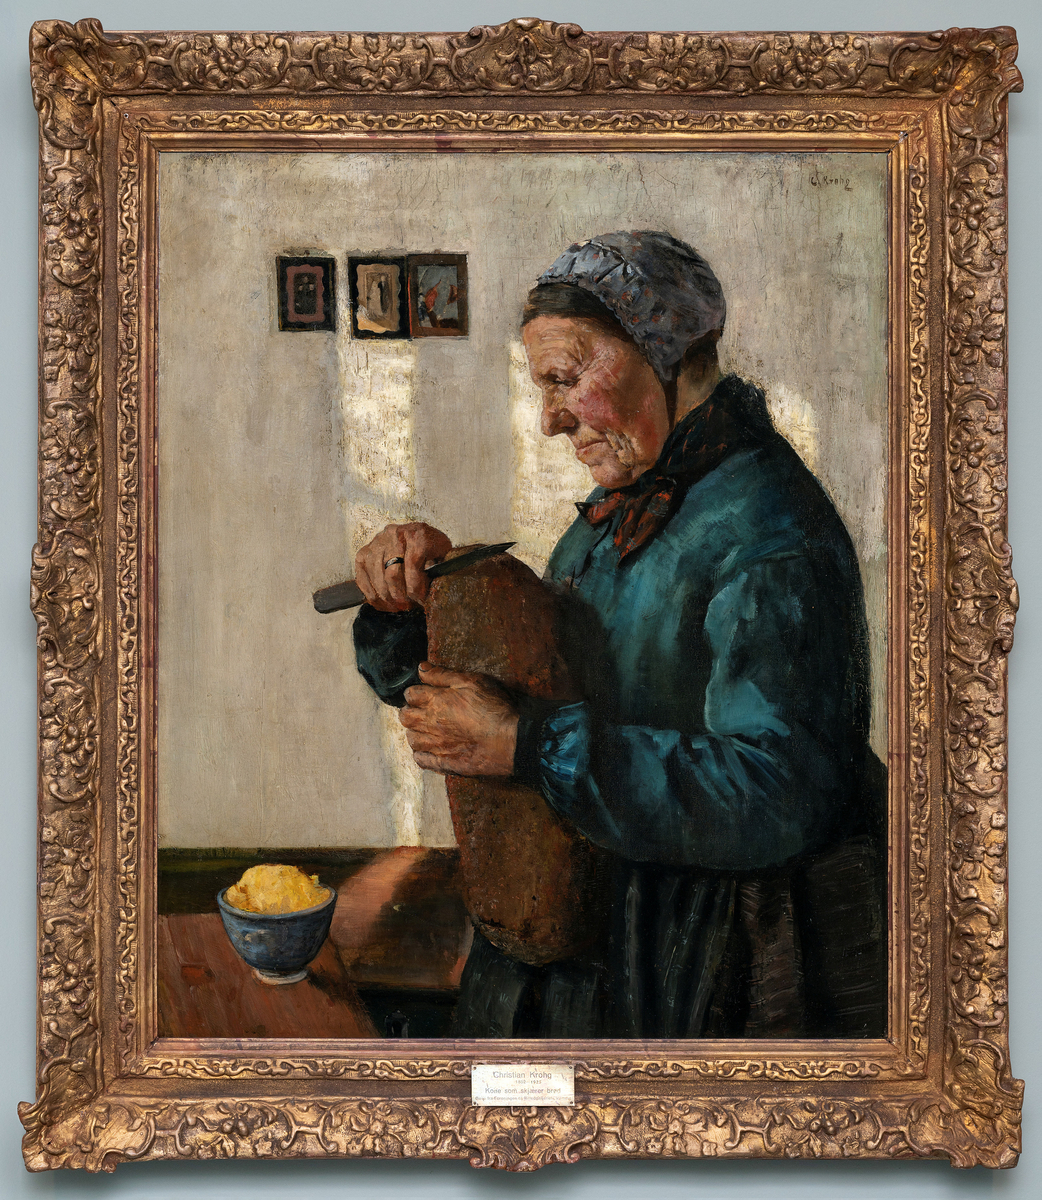 Eldre kvinne i blå bluse og brunt skjørt ved et bord i ferd med å skjære et brød som hun holder foran brystet. Blå kopp med smør på bordet.